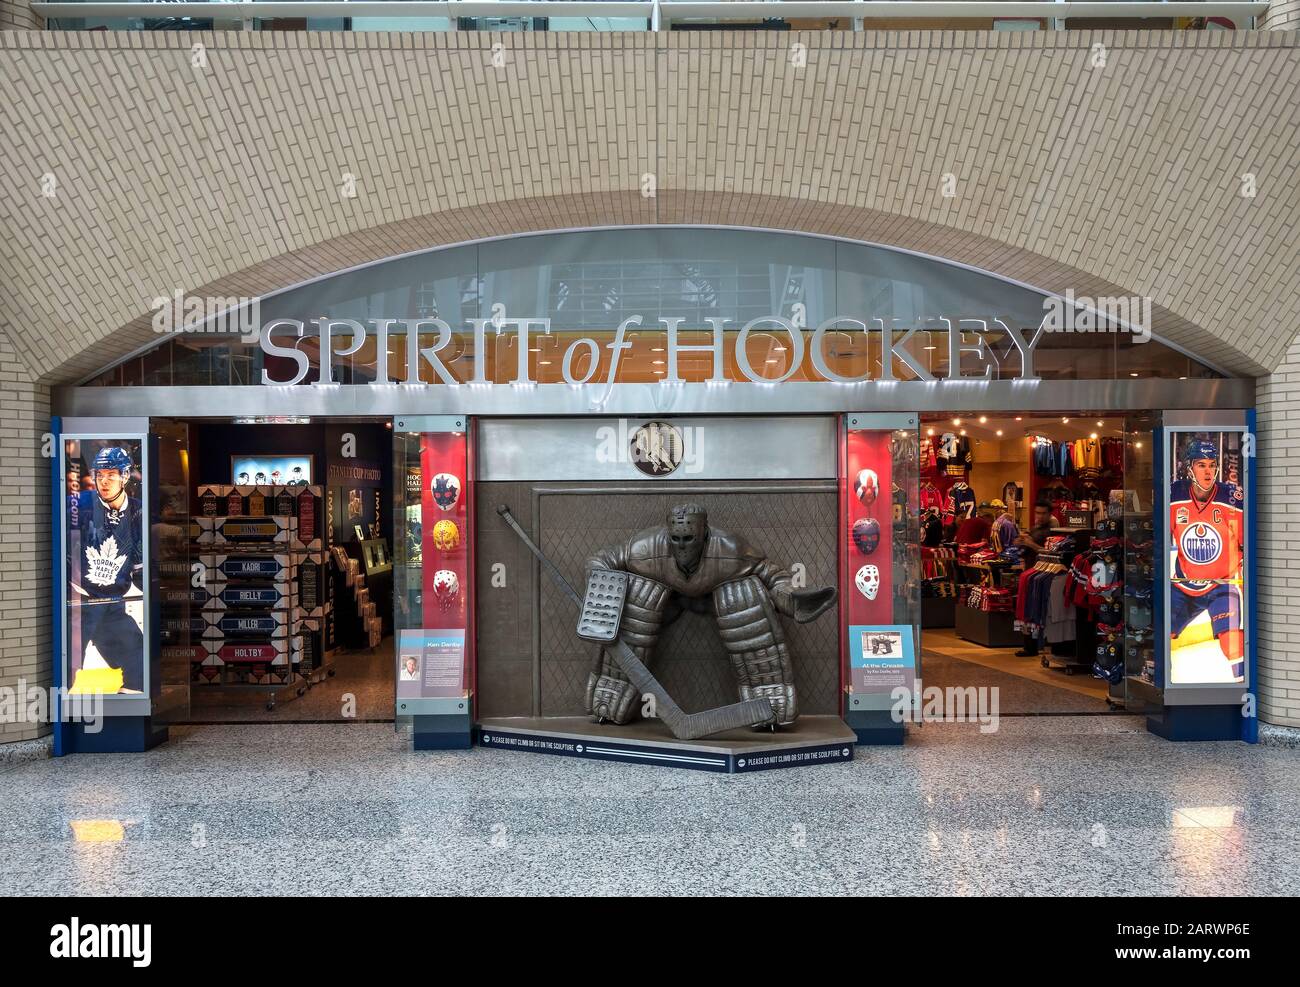 spirit of hockey shop